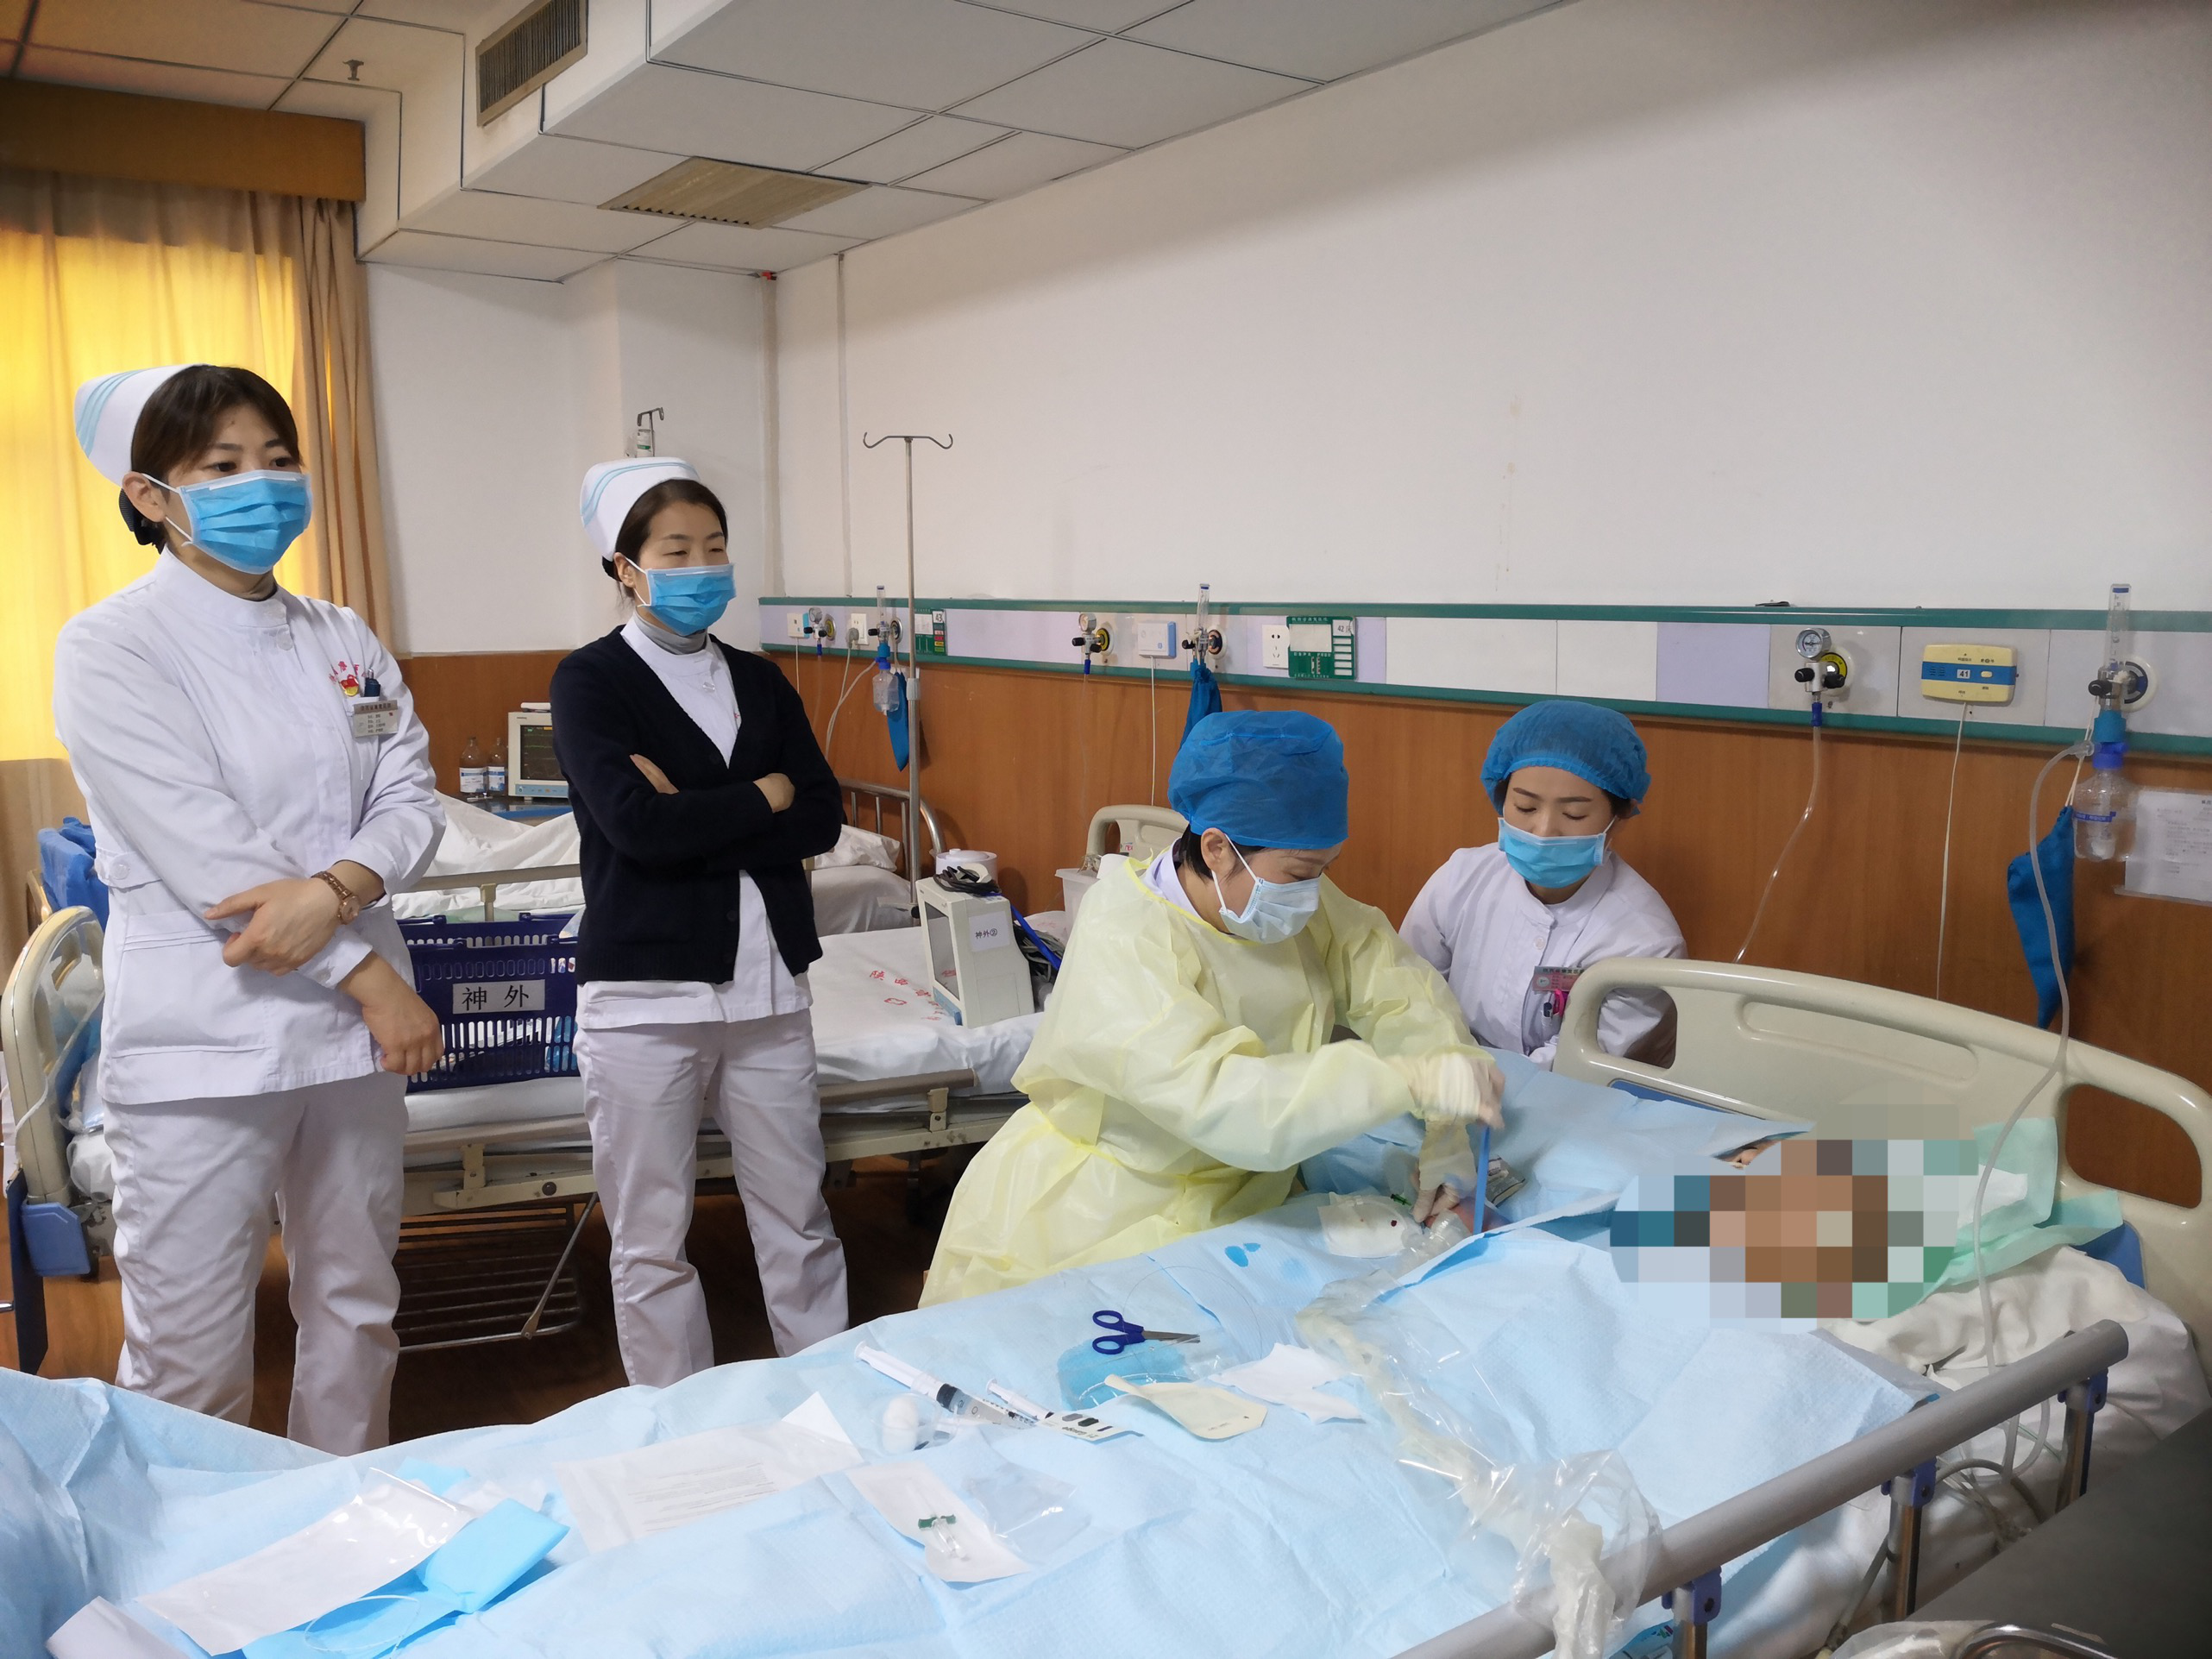 【硬核技术】陕西省康复医院护理部开展首例中线导管置入术